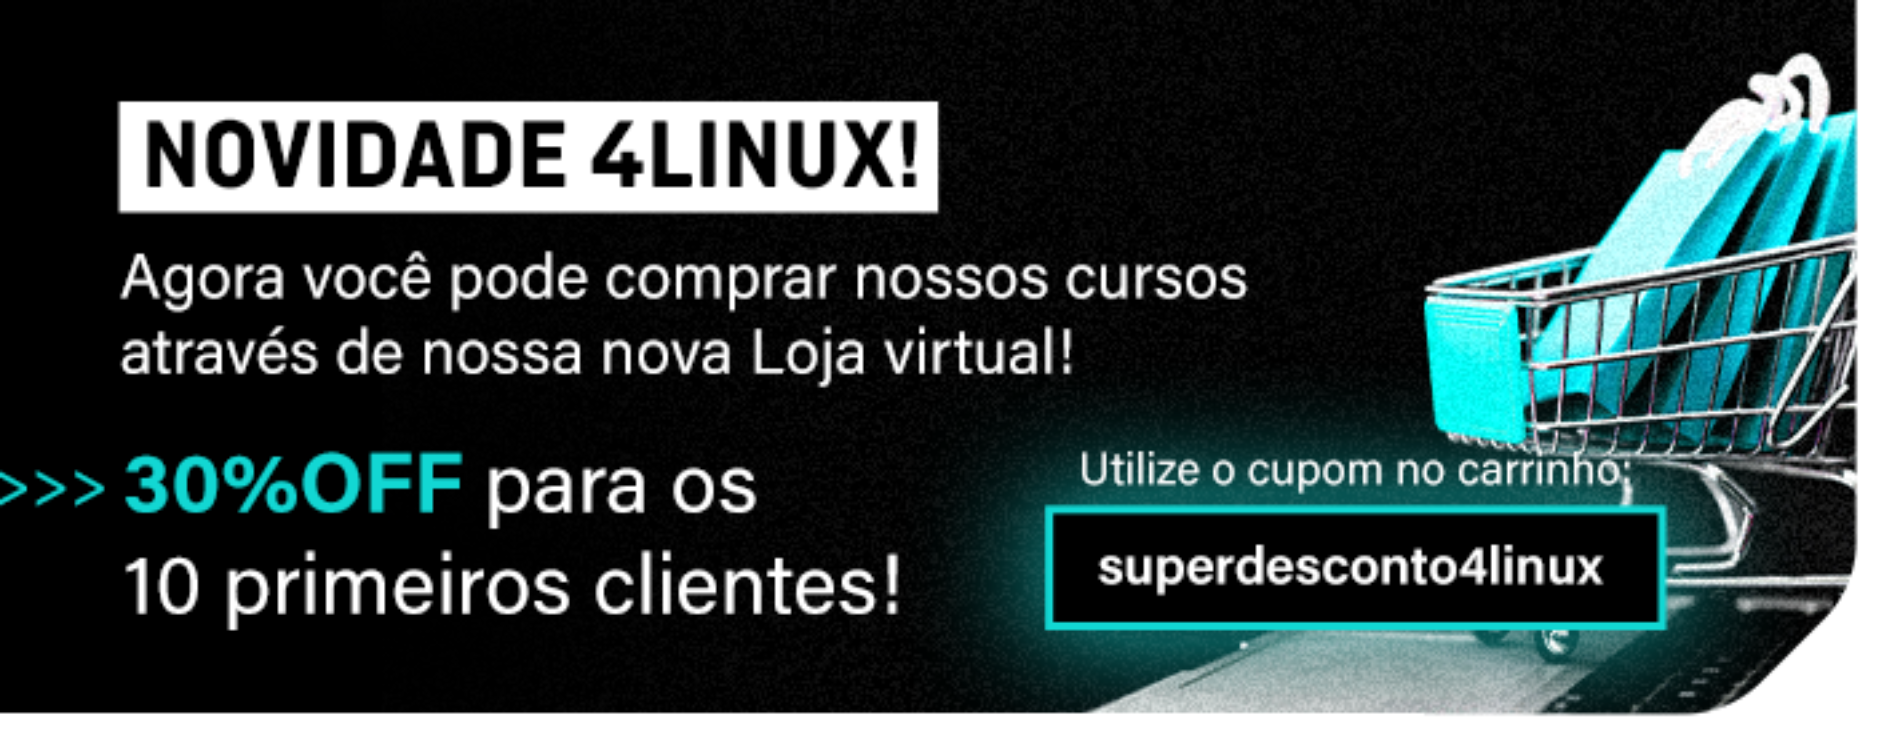 LANÇAMENTO: Loja virtual da 4Linux está com preços promocionais.